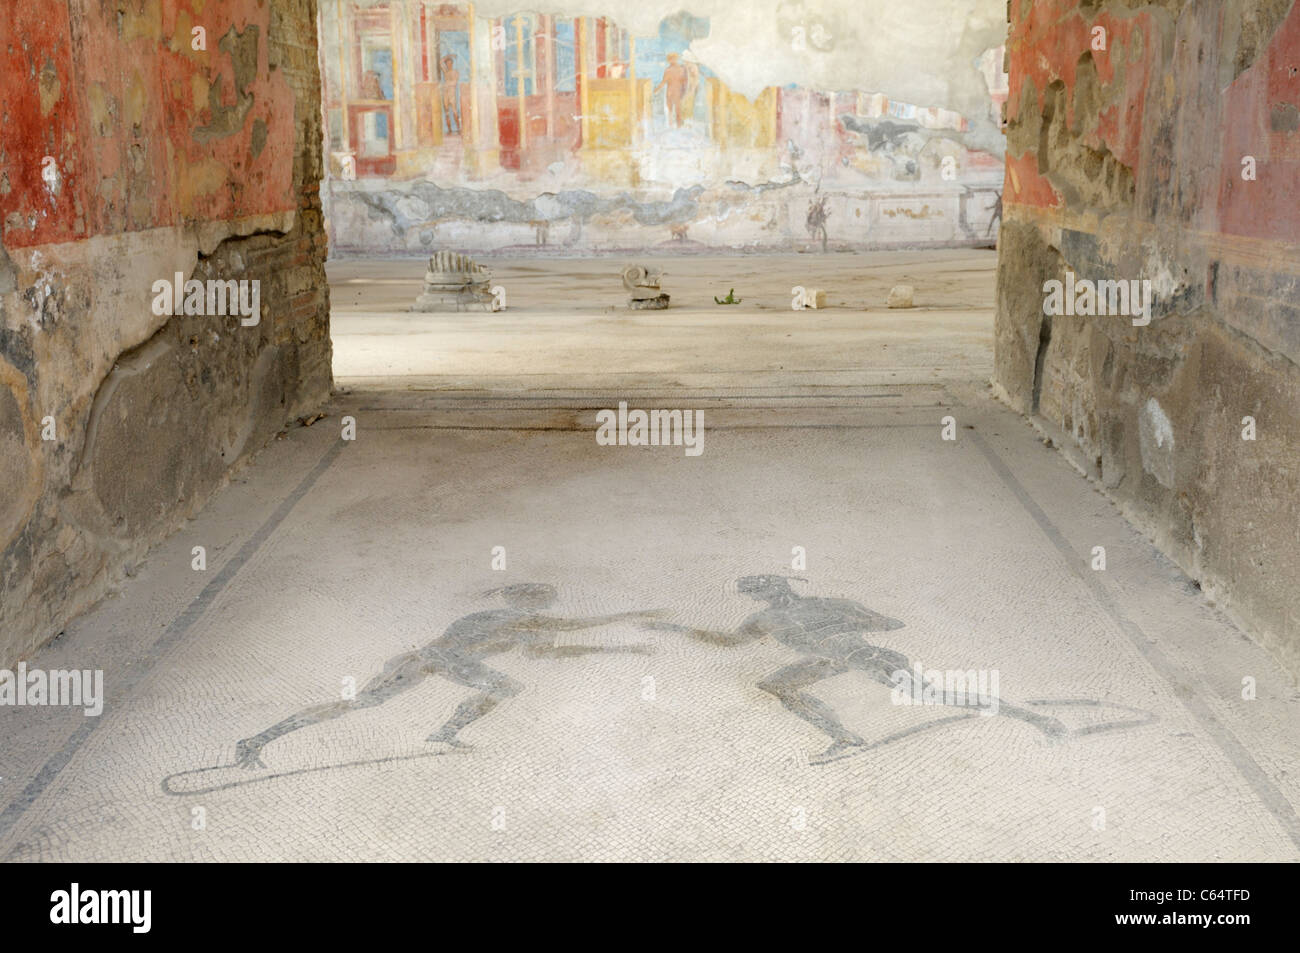 Ingresso di una casa che è stata convertita in una palestra, Pompei. Un pavimento a mosaico raffigura due atleti e le pareti sono visibili affreschi. Foto Stock